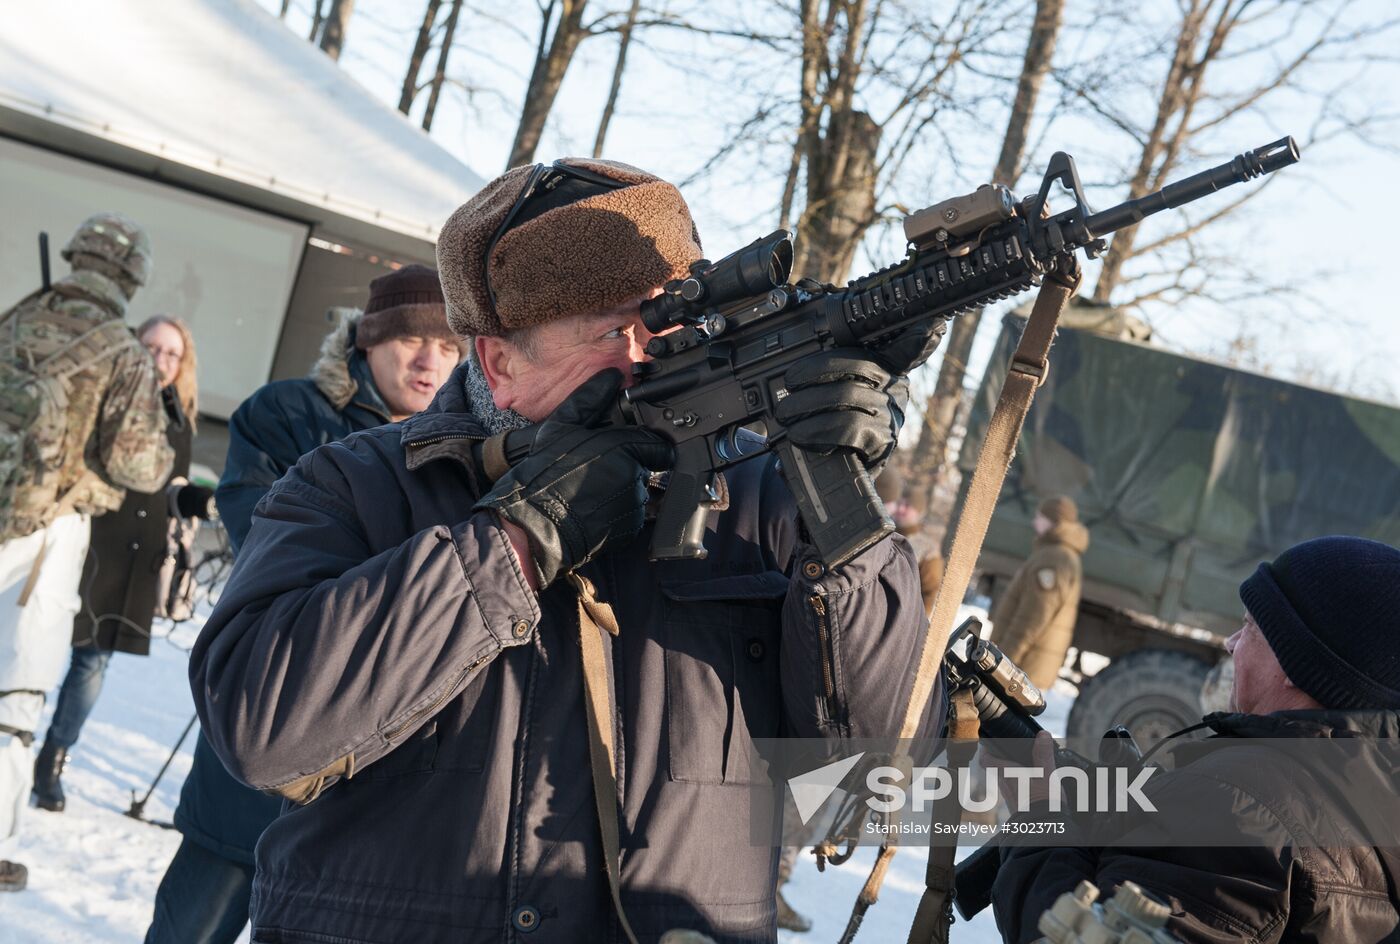 Demonstration of NATO military equipment in Latvia